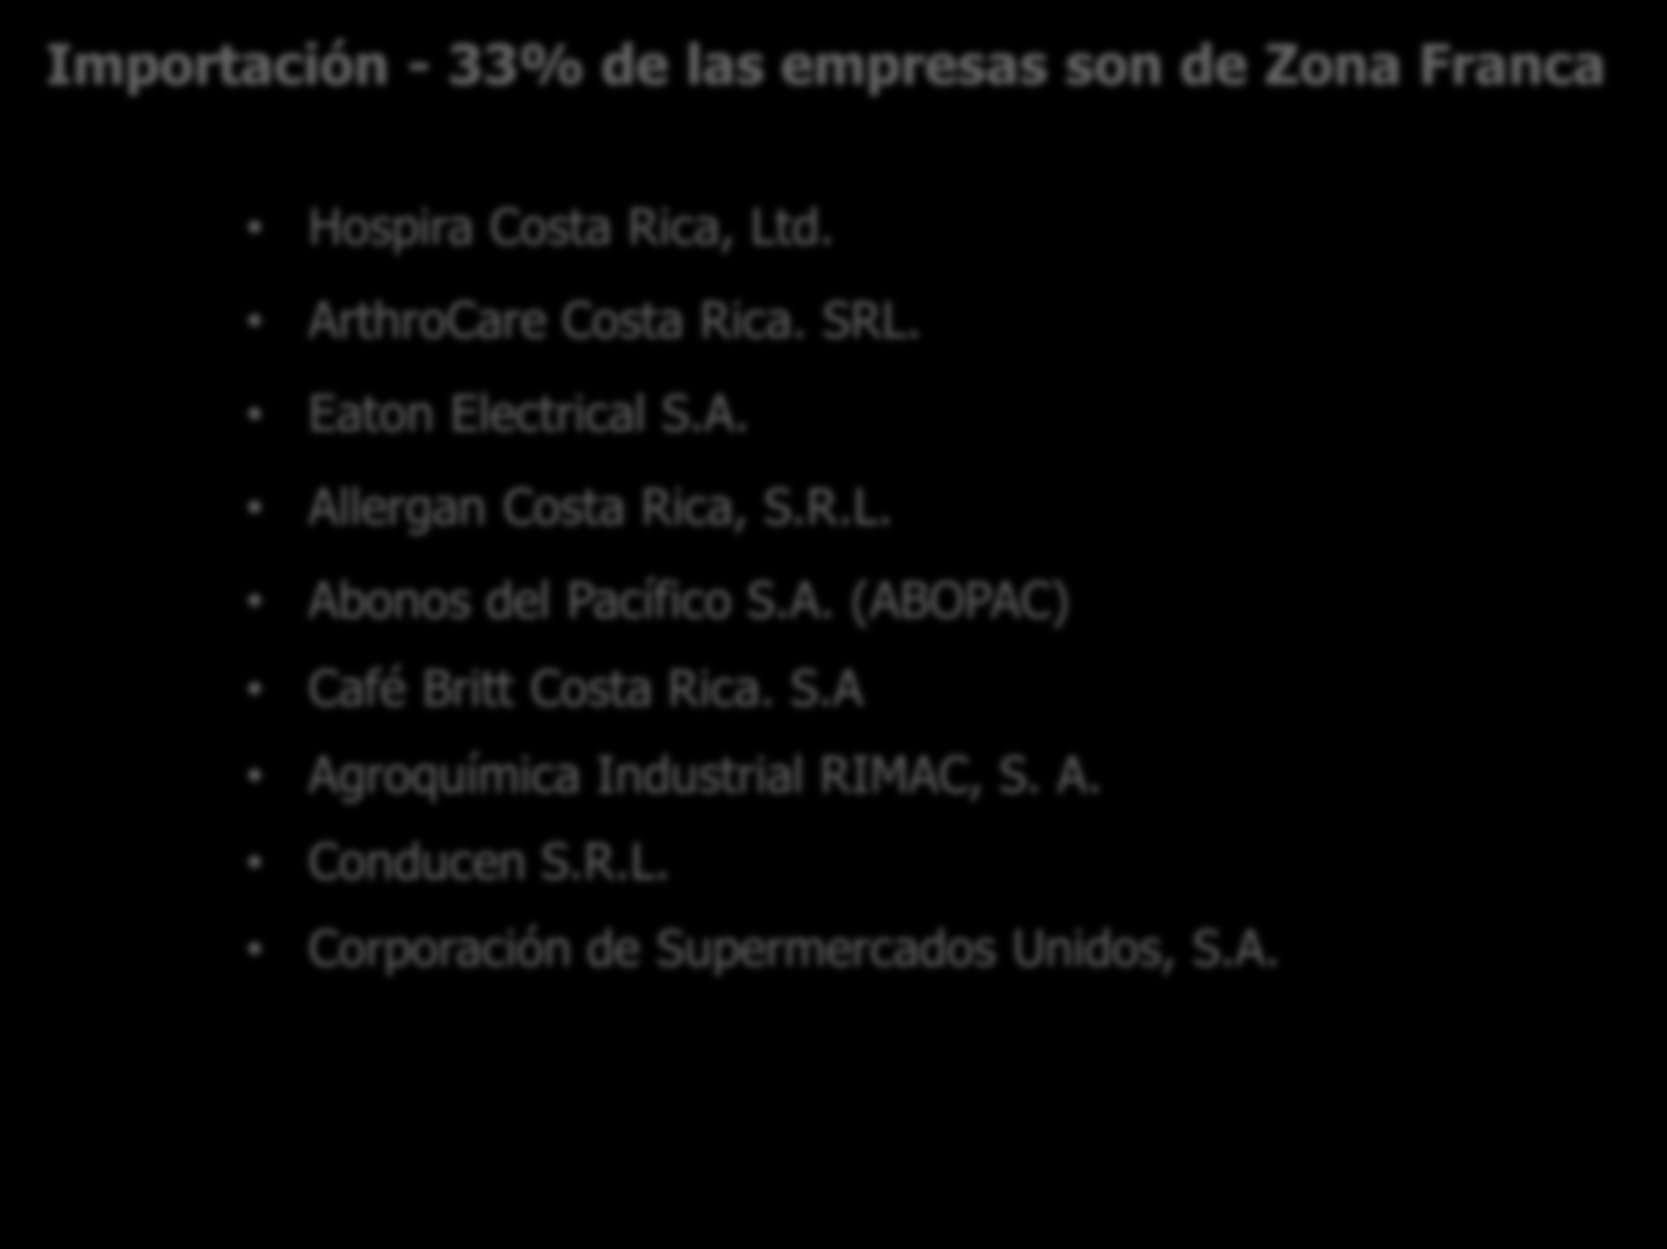 Empresas certificadas Importación - 33% de las empresas son de Zona Franca Hospira Costa Rica, Ltd. ArthroCare Costa Rica. SRL. Eaton Electrical S.A. Allergan Costa Rica, S.